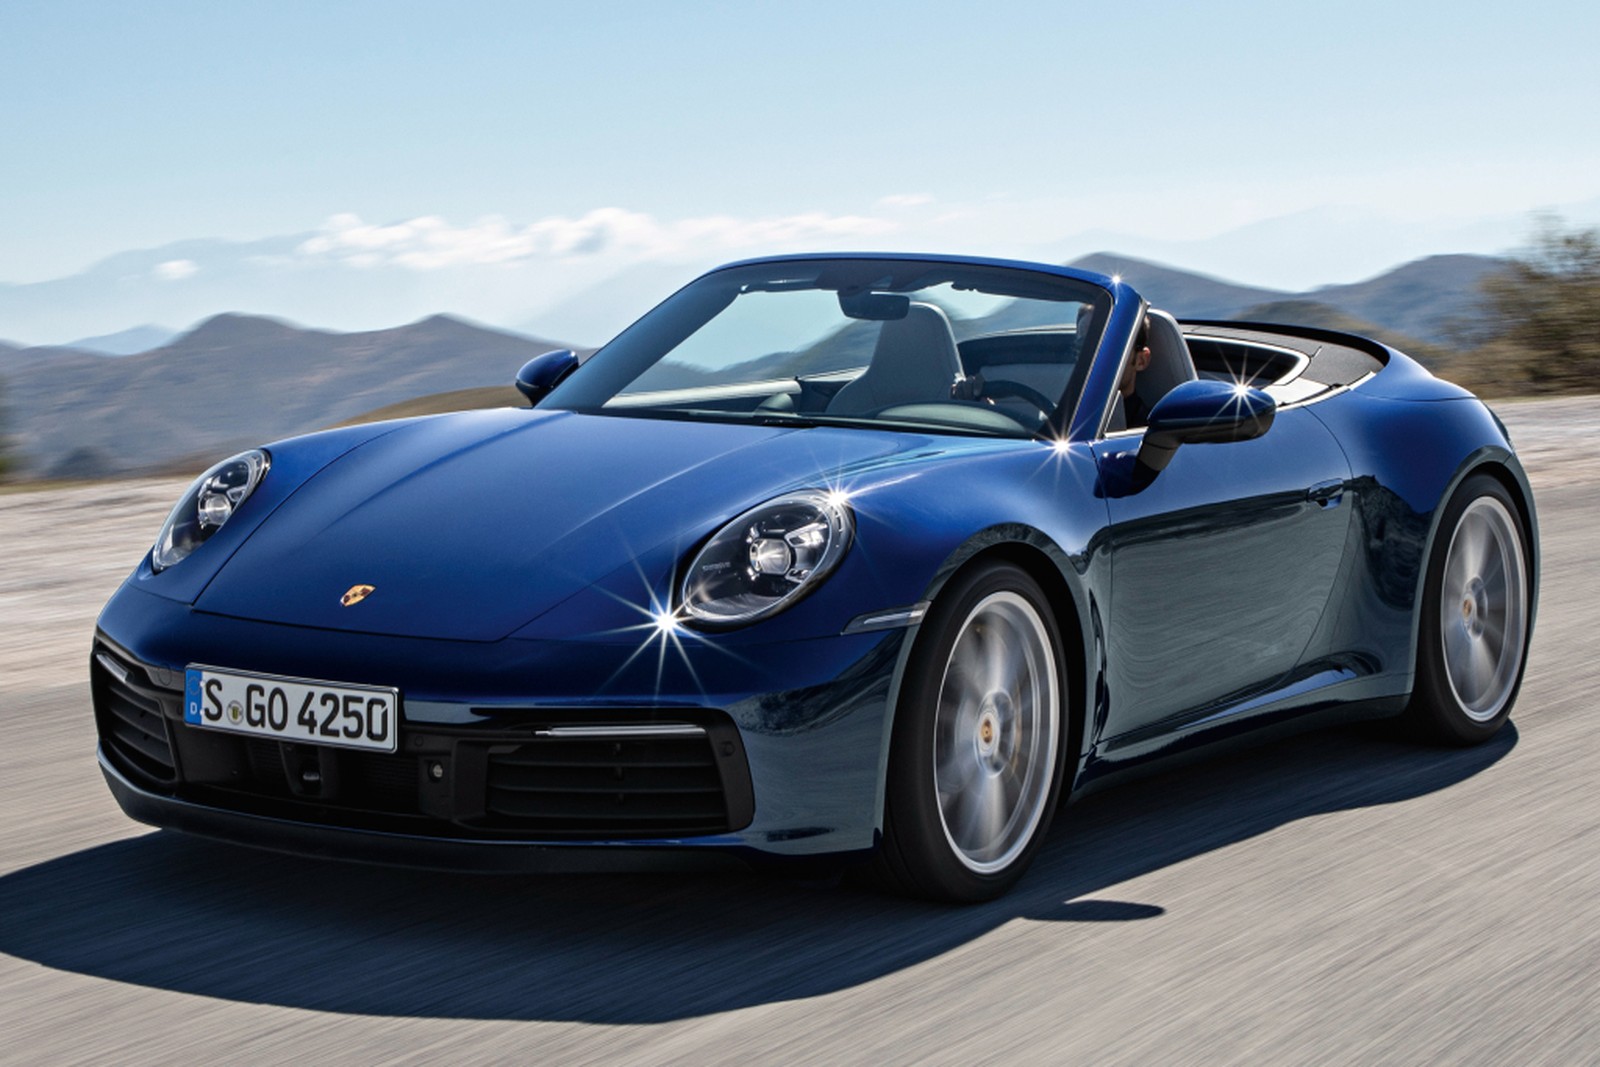 A oitava geração do Porsche 911 já tem data para chegar ao Brasil. Em maio, duas versões serão importadas e vendidas por cerca de R$ 670 e R$ 700 mil.